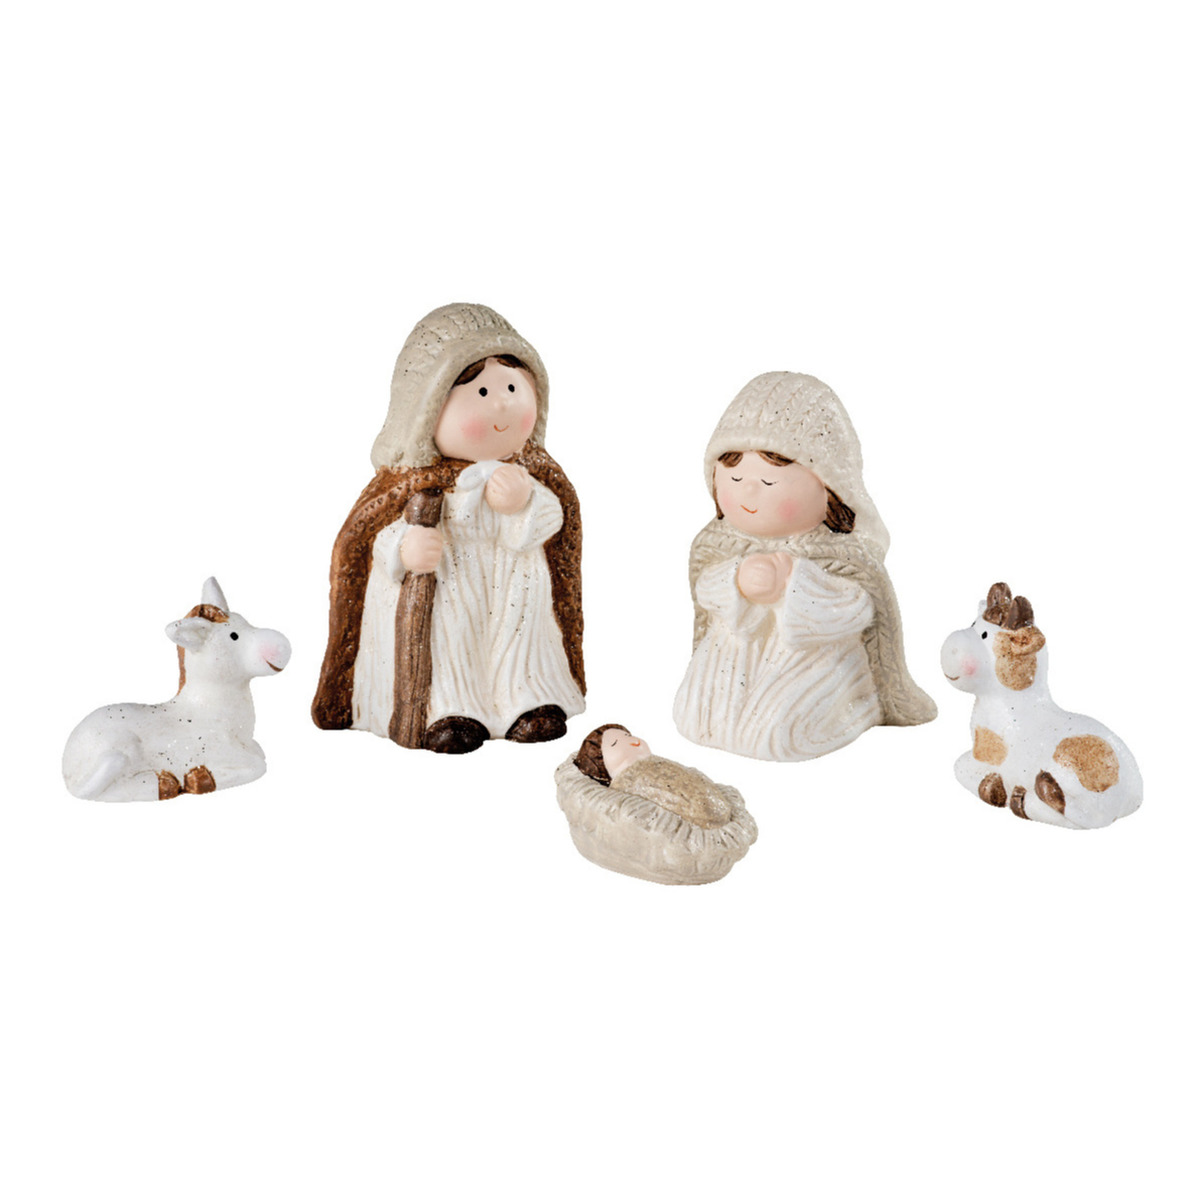 Kinder-kinderkamer kerststal beelden-figuren 6,4 x 4 x 3,2 cm